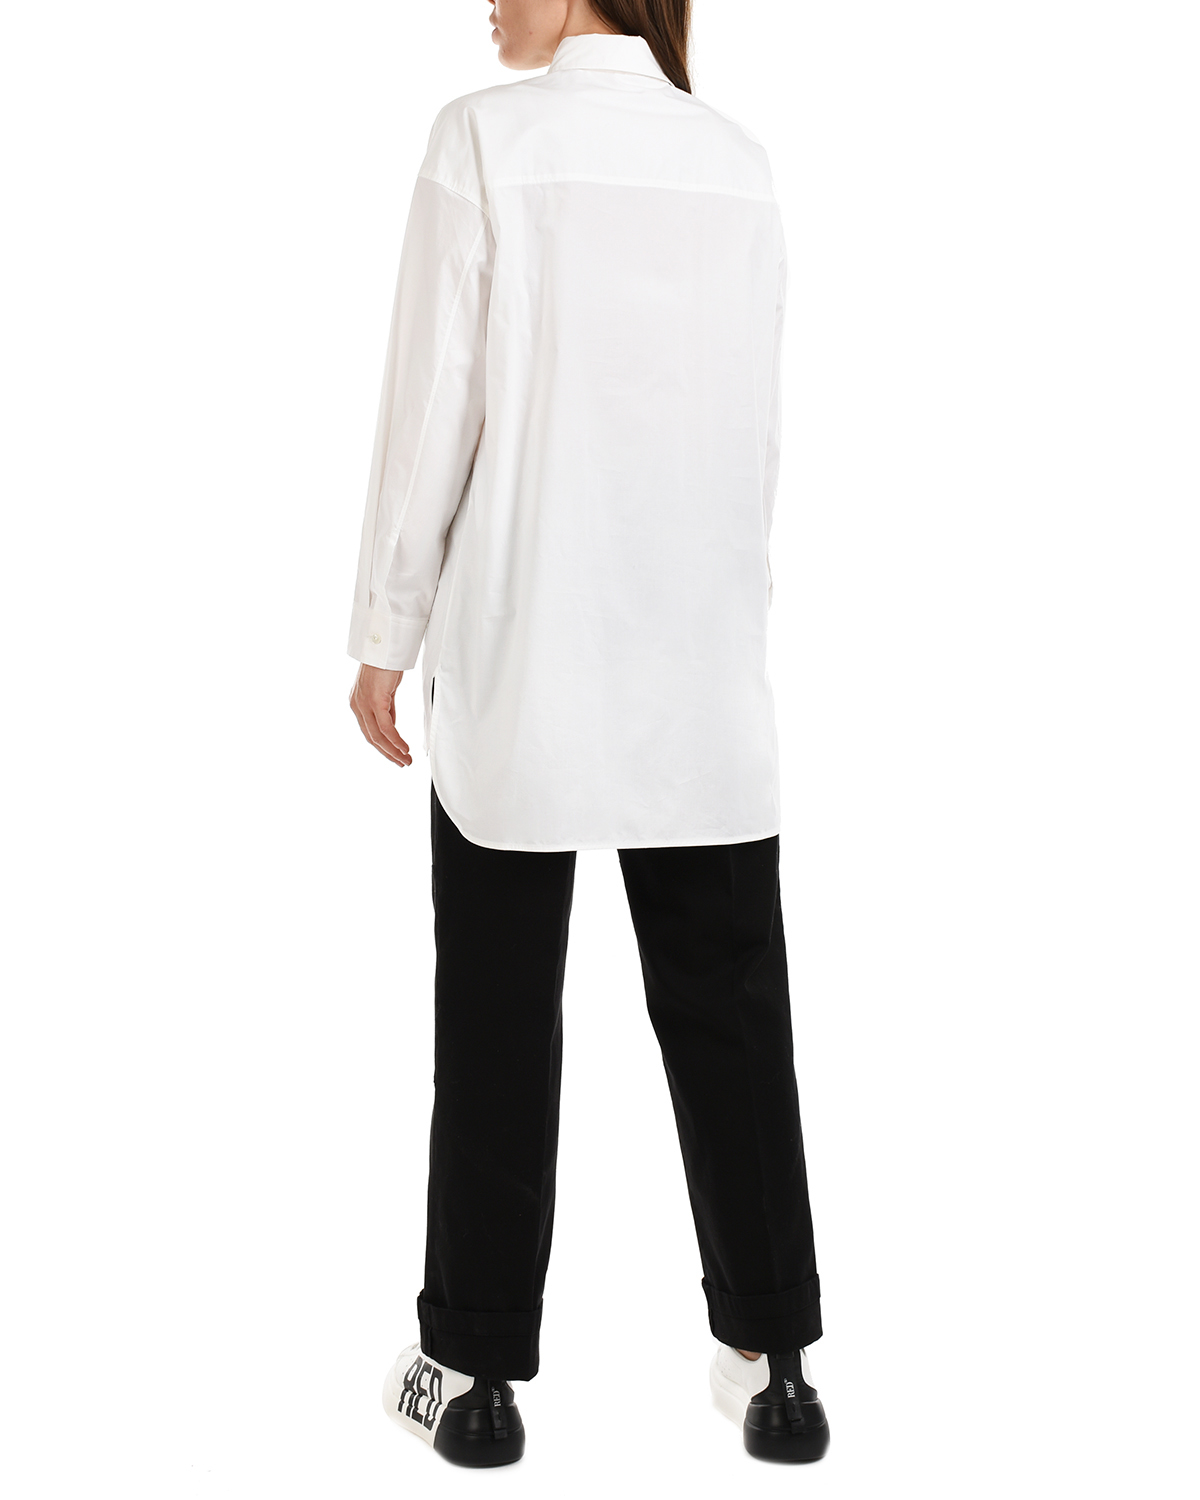 Удлиненная белая рубашка Parosh, размер 38, цвет белый - фото 3